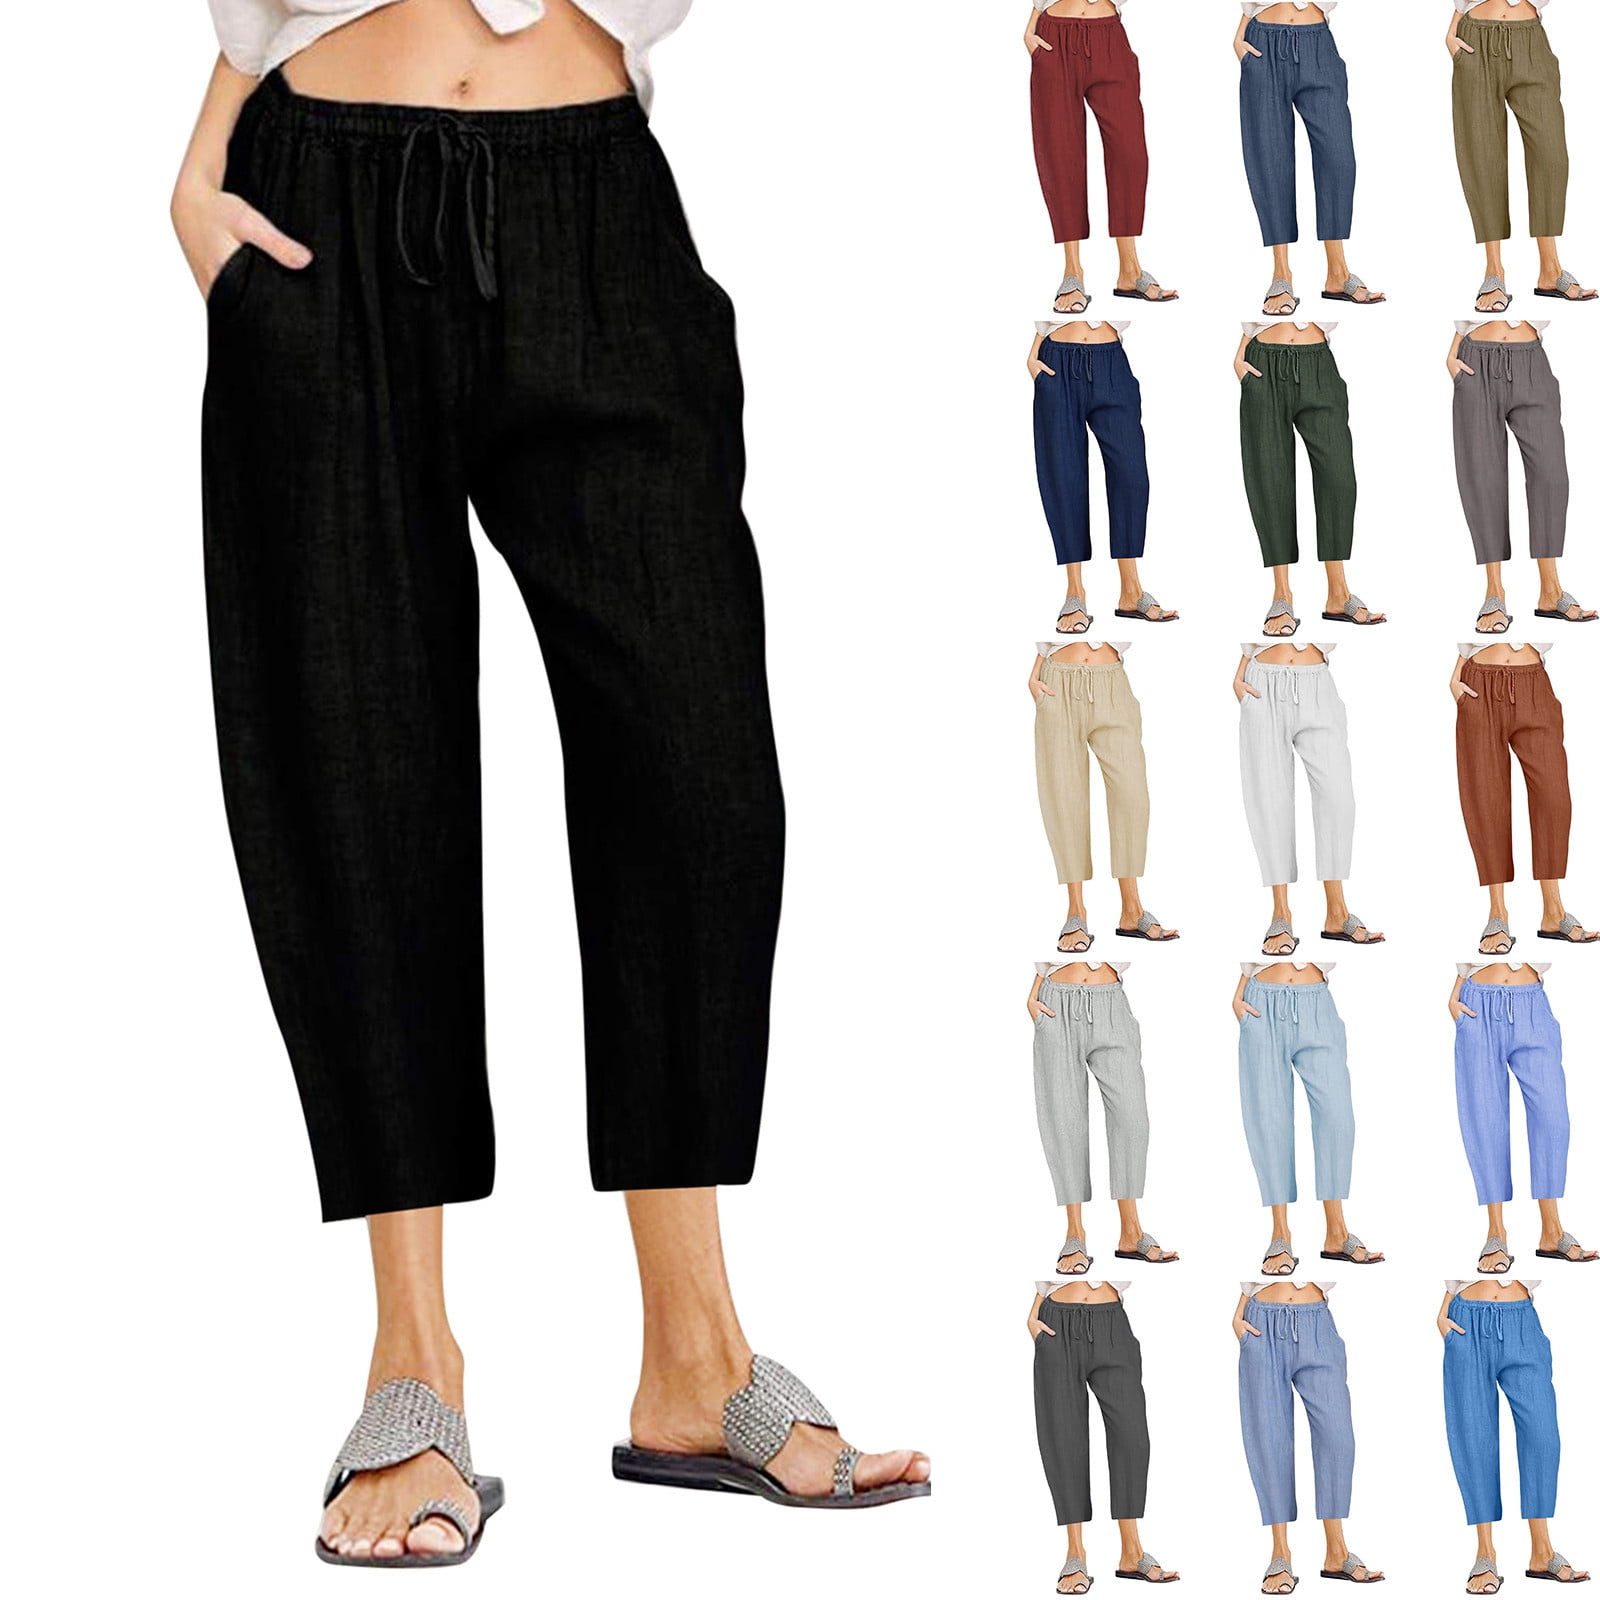 symoid Womens Cotton Linen Capris Pants- Lounge Pants Casual Solid ...